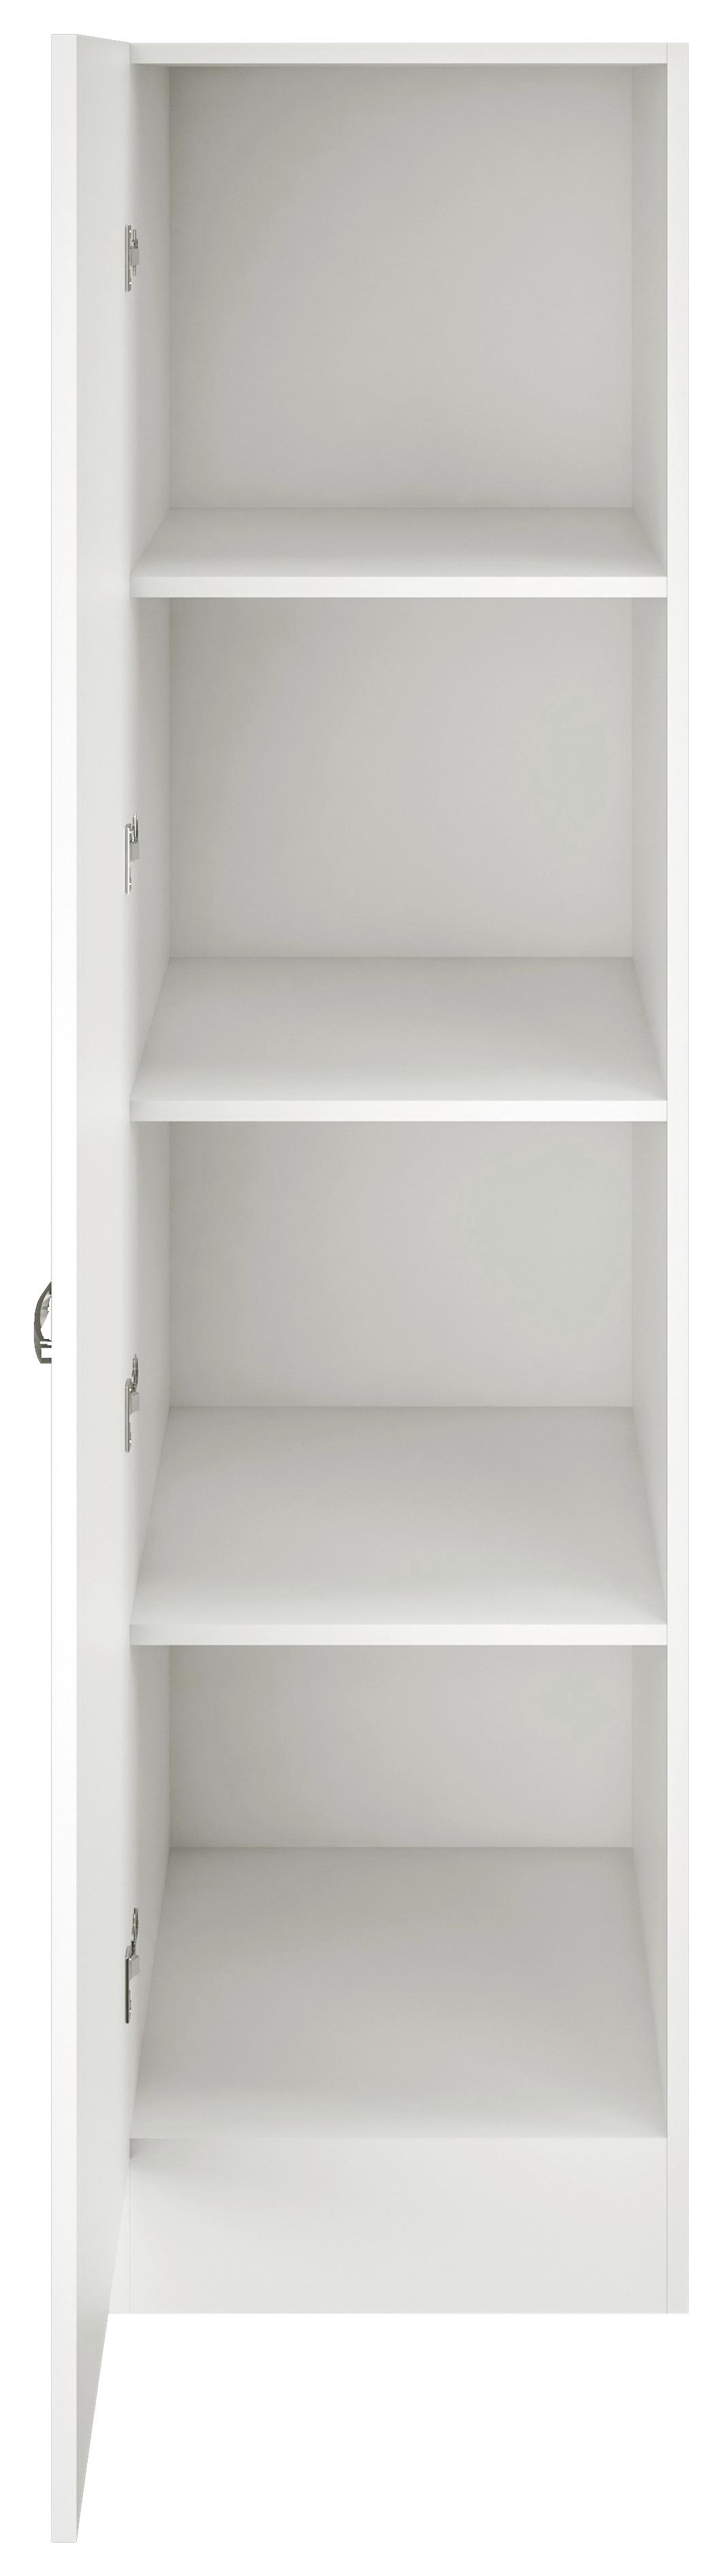 Geschirrschrank Alba B: 50 cm Weiß 1 Drehtür 3 Böden - Weiß, MODERN, Holzwerkstoff (50/200/57cm)